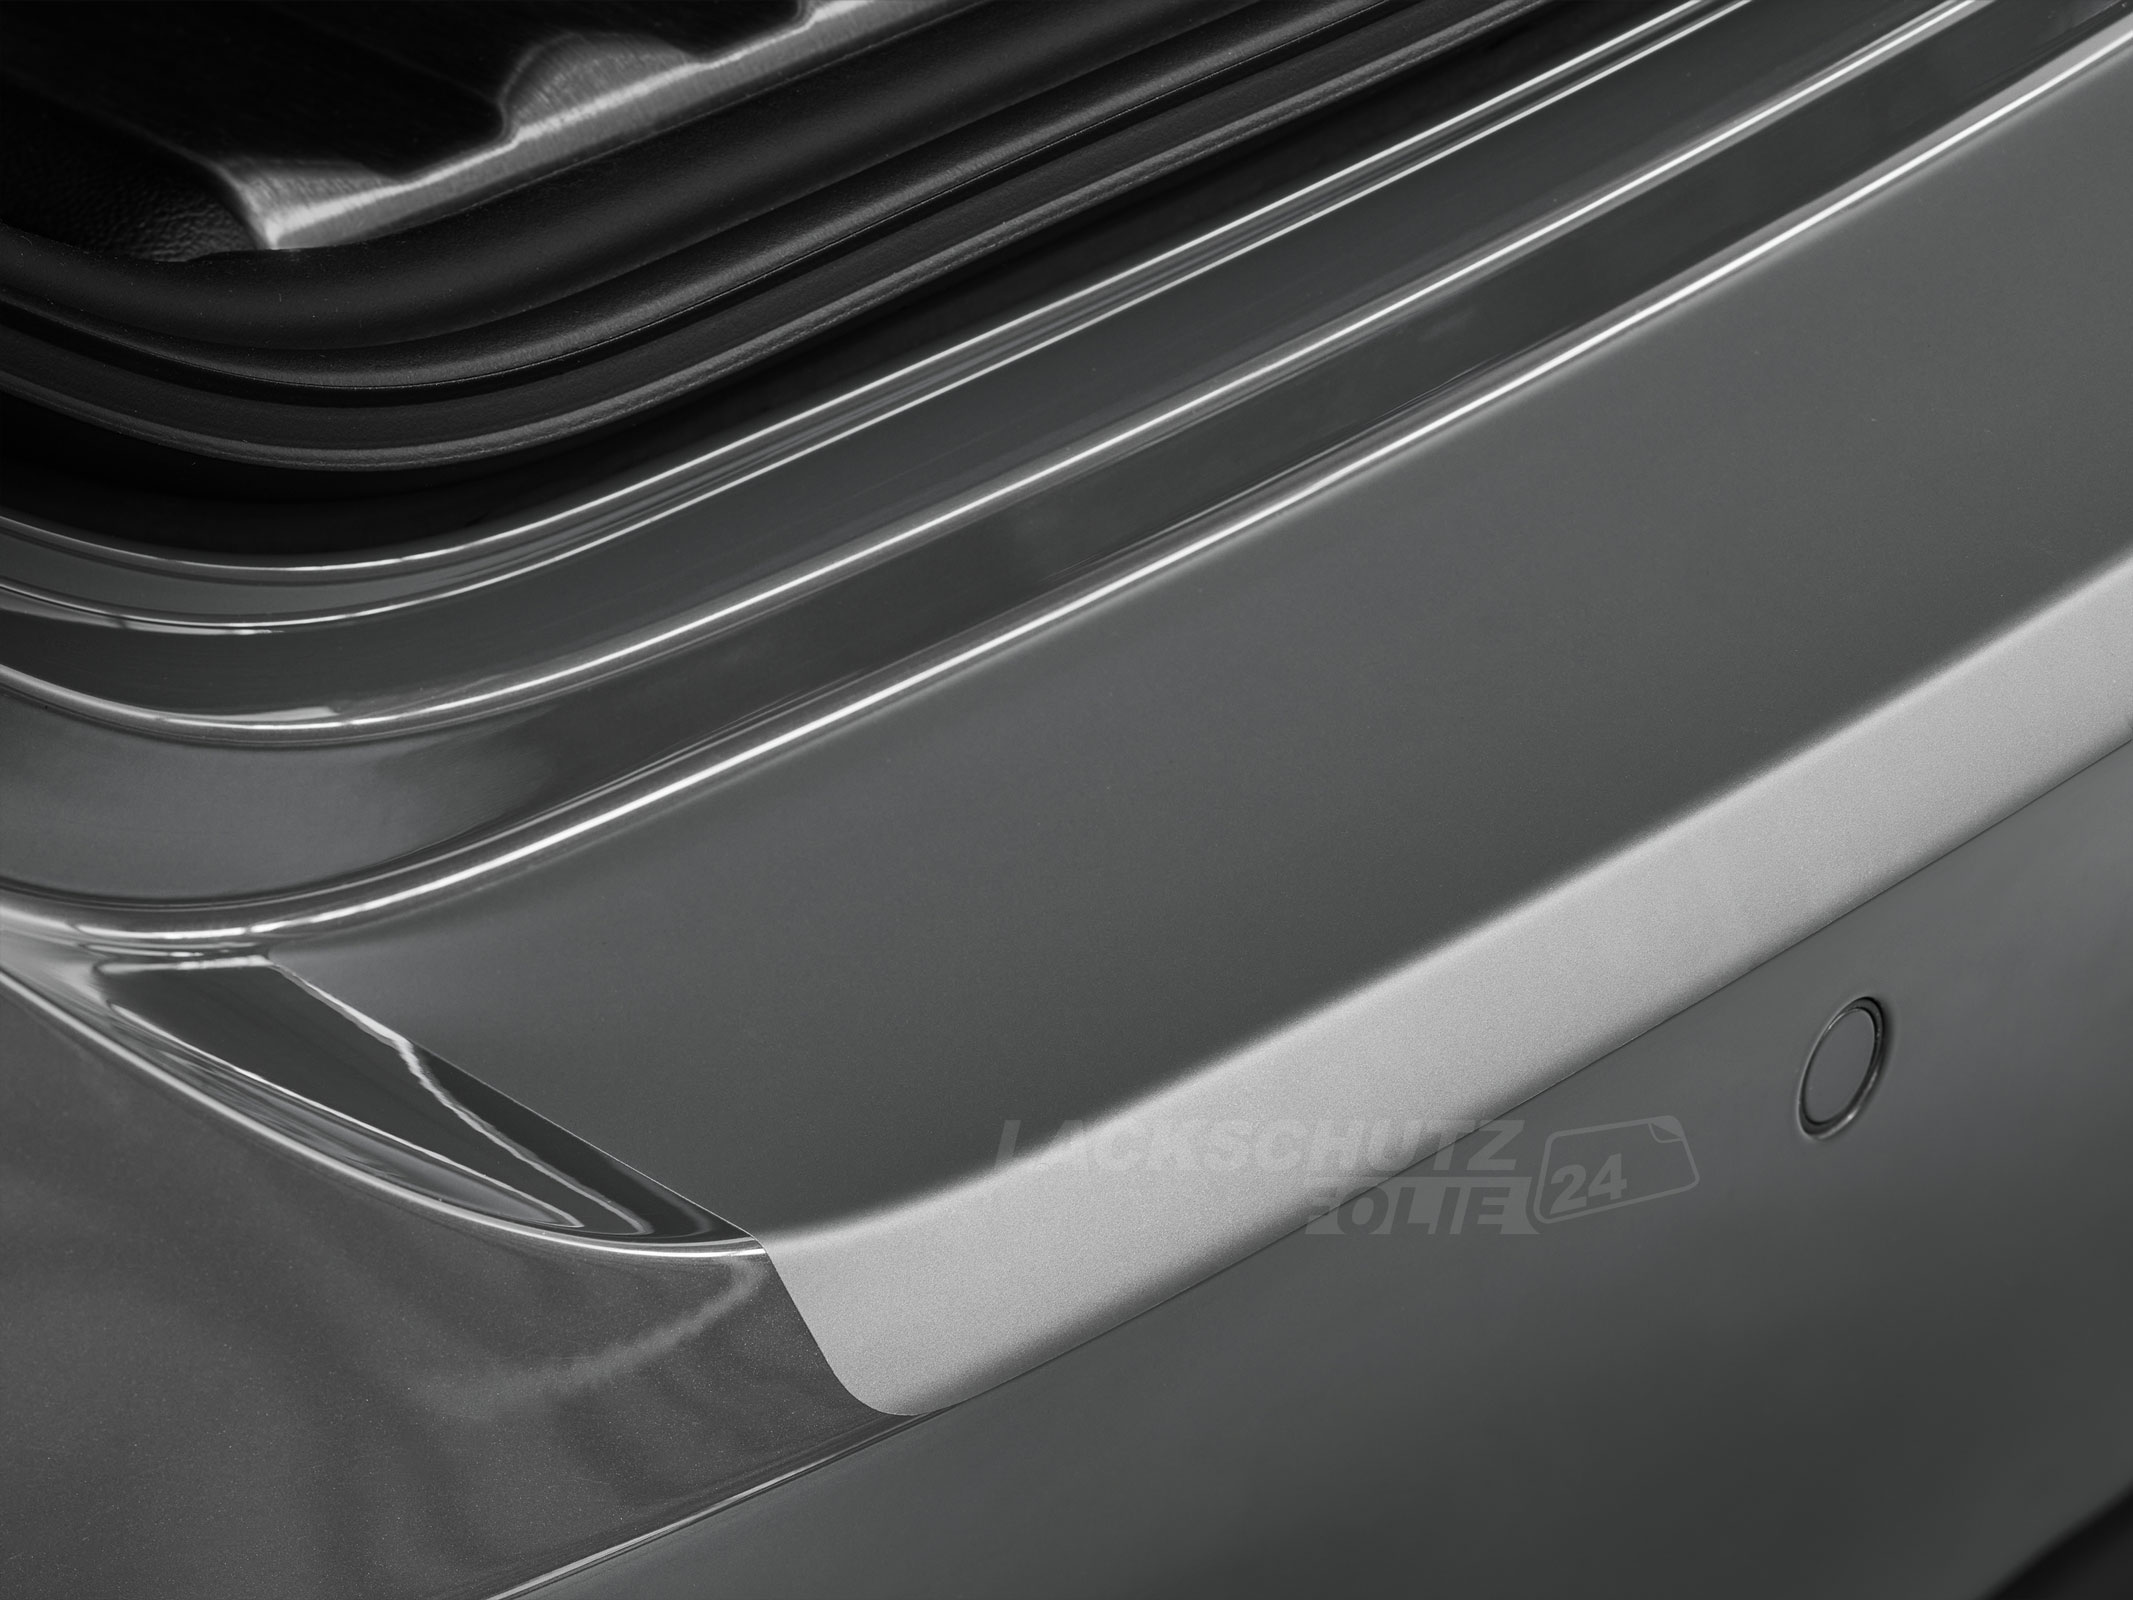 Ladekantenschutzfolie - Transparent Glatt MATT 110 µm stark  für Mazda 6 Sport (II) Typ GH, BJ 03/2008-2012